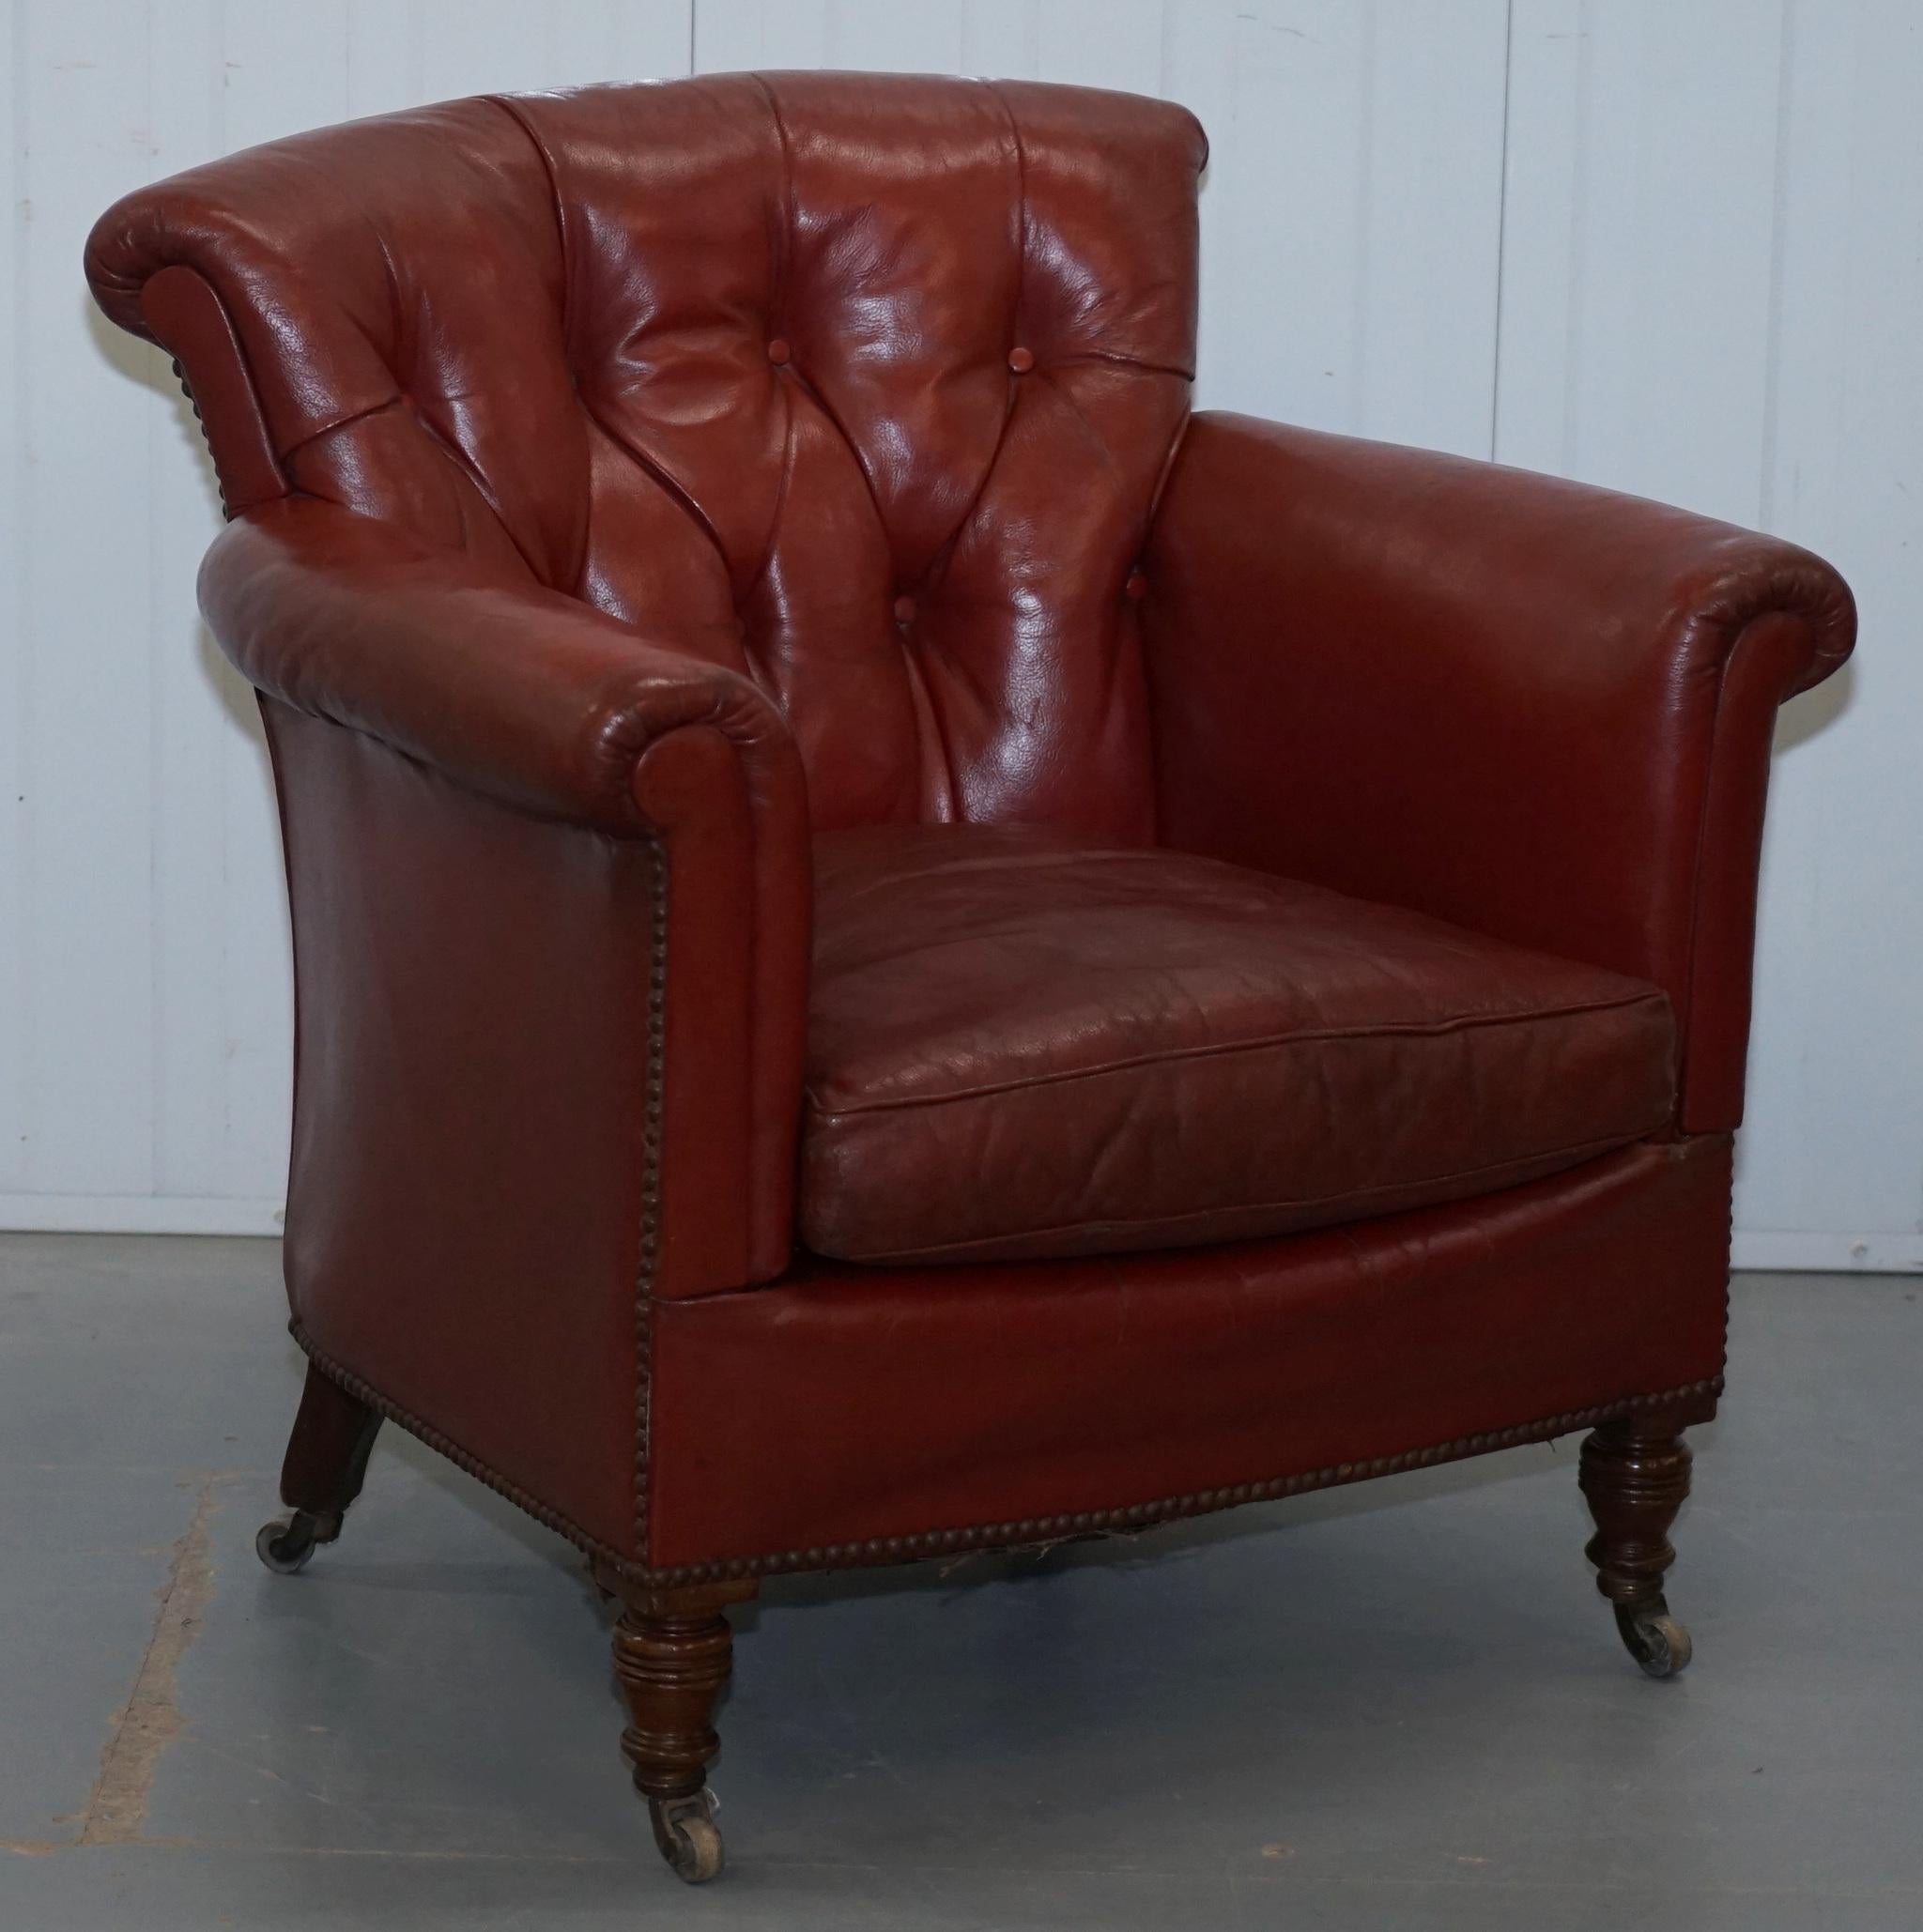 Wir freuen uns, diese einmalige Gelegenheit, ein Paar originaler Howard & Sons Sessel aus blutrotem, viktorianischem Leder mit originalen Rollen zu besitzen, dem großen Sir Rod Stewart zum Verkauf anzubieten.

Nie wieder werden Sie in der Lage